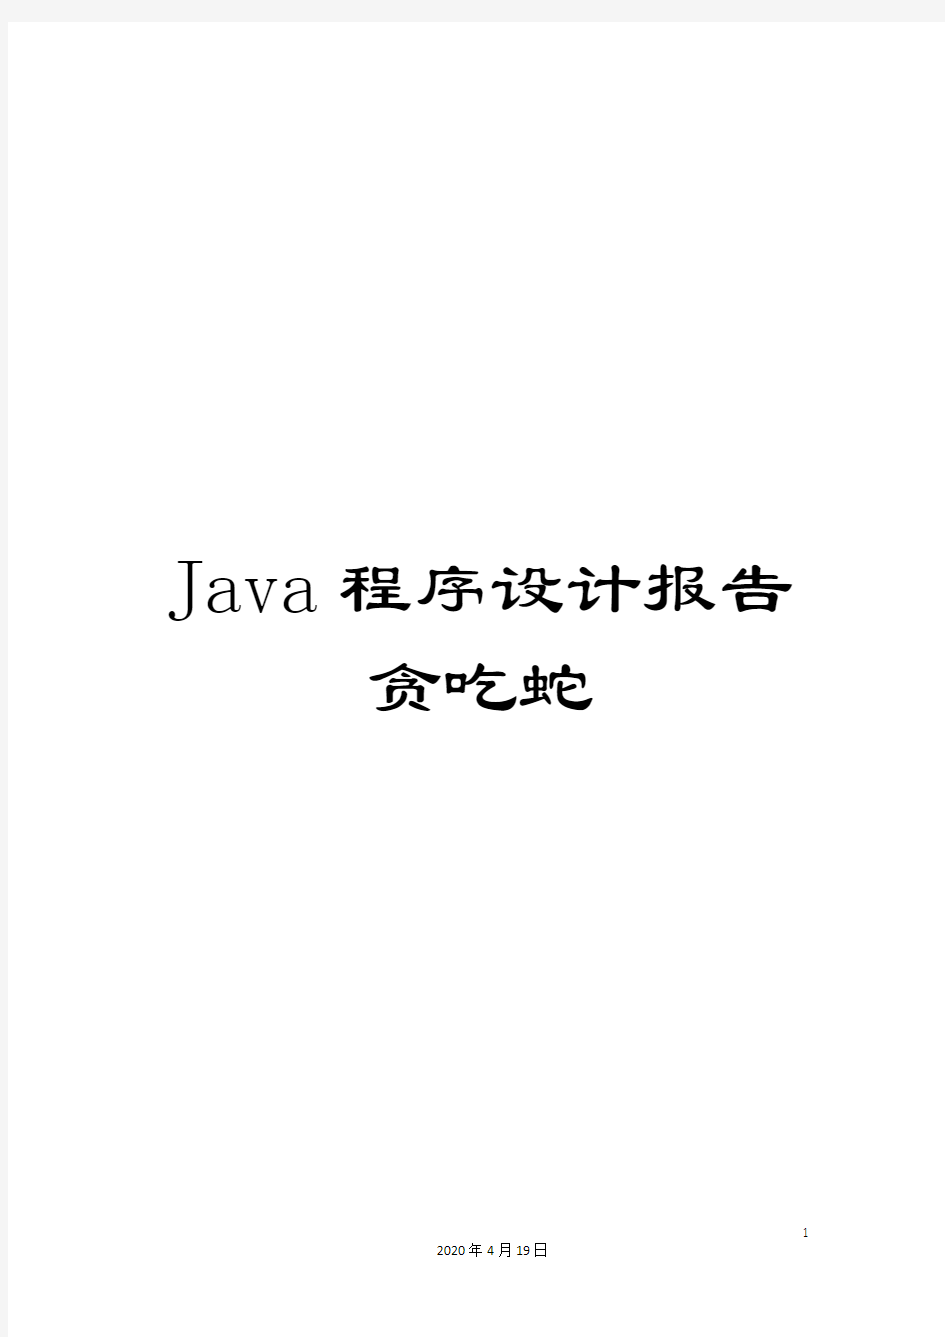 Java程序设计报告贪吃蛇